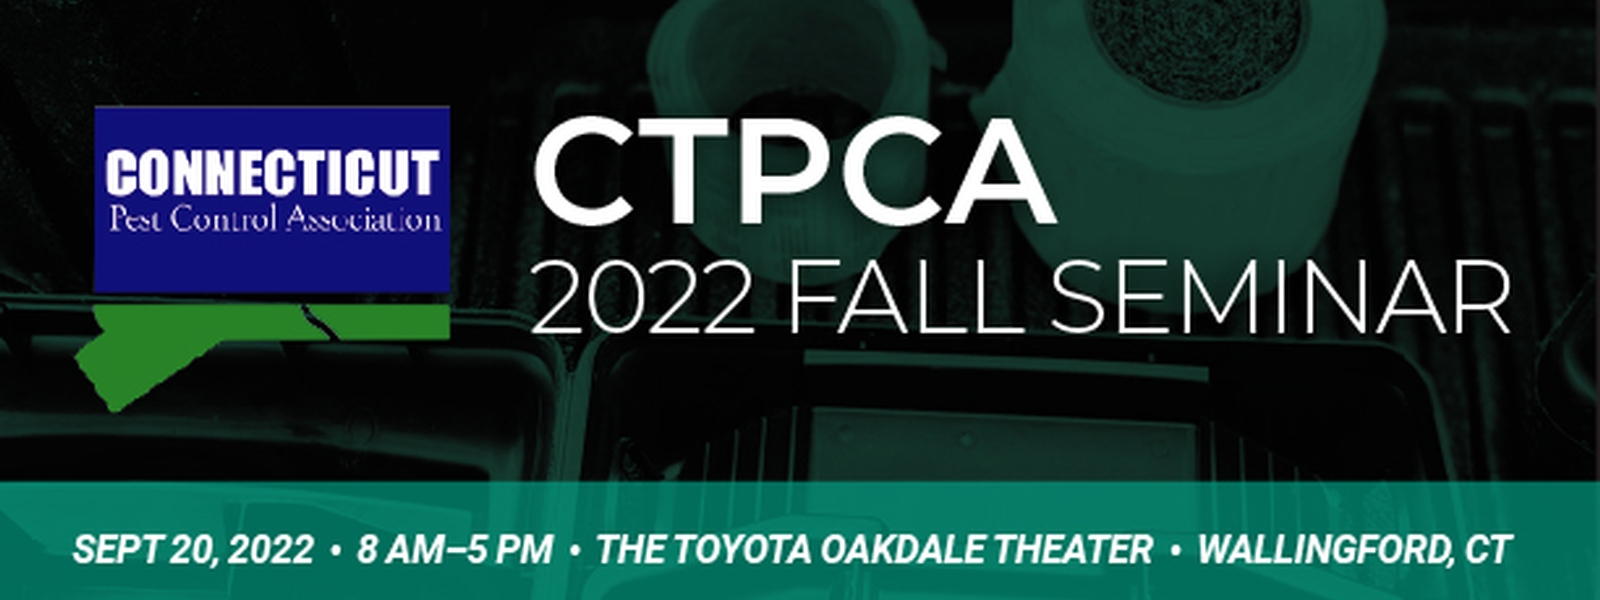 CTPCA 2022 Fall Seminar